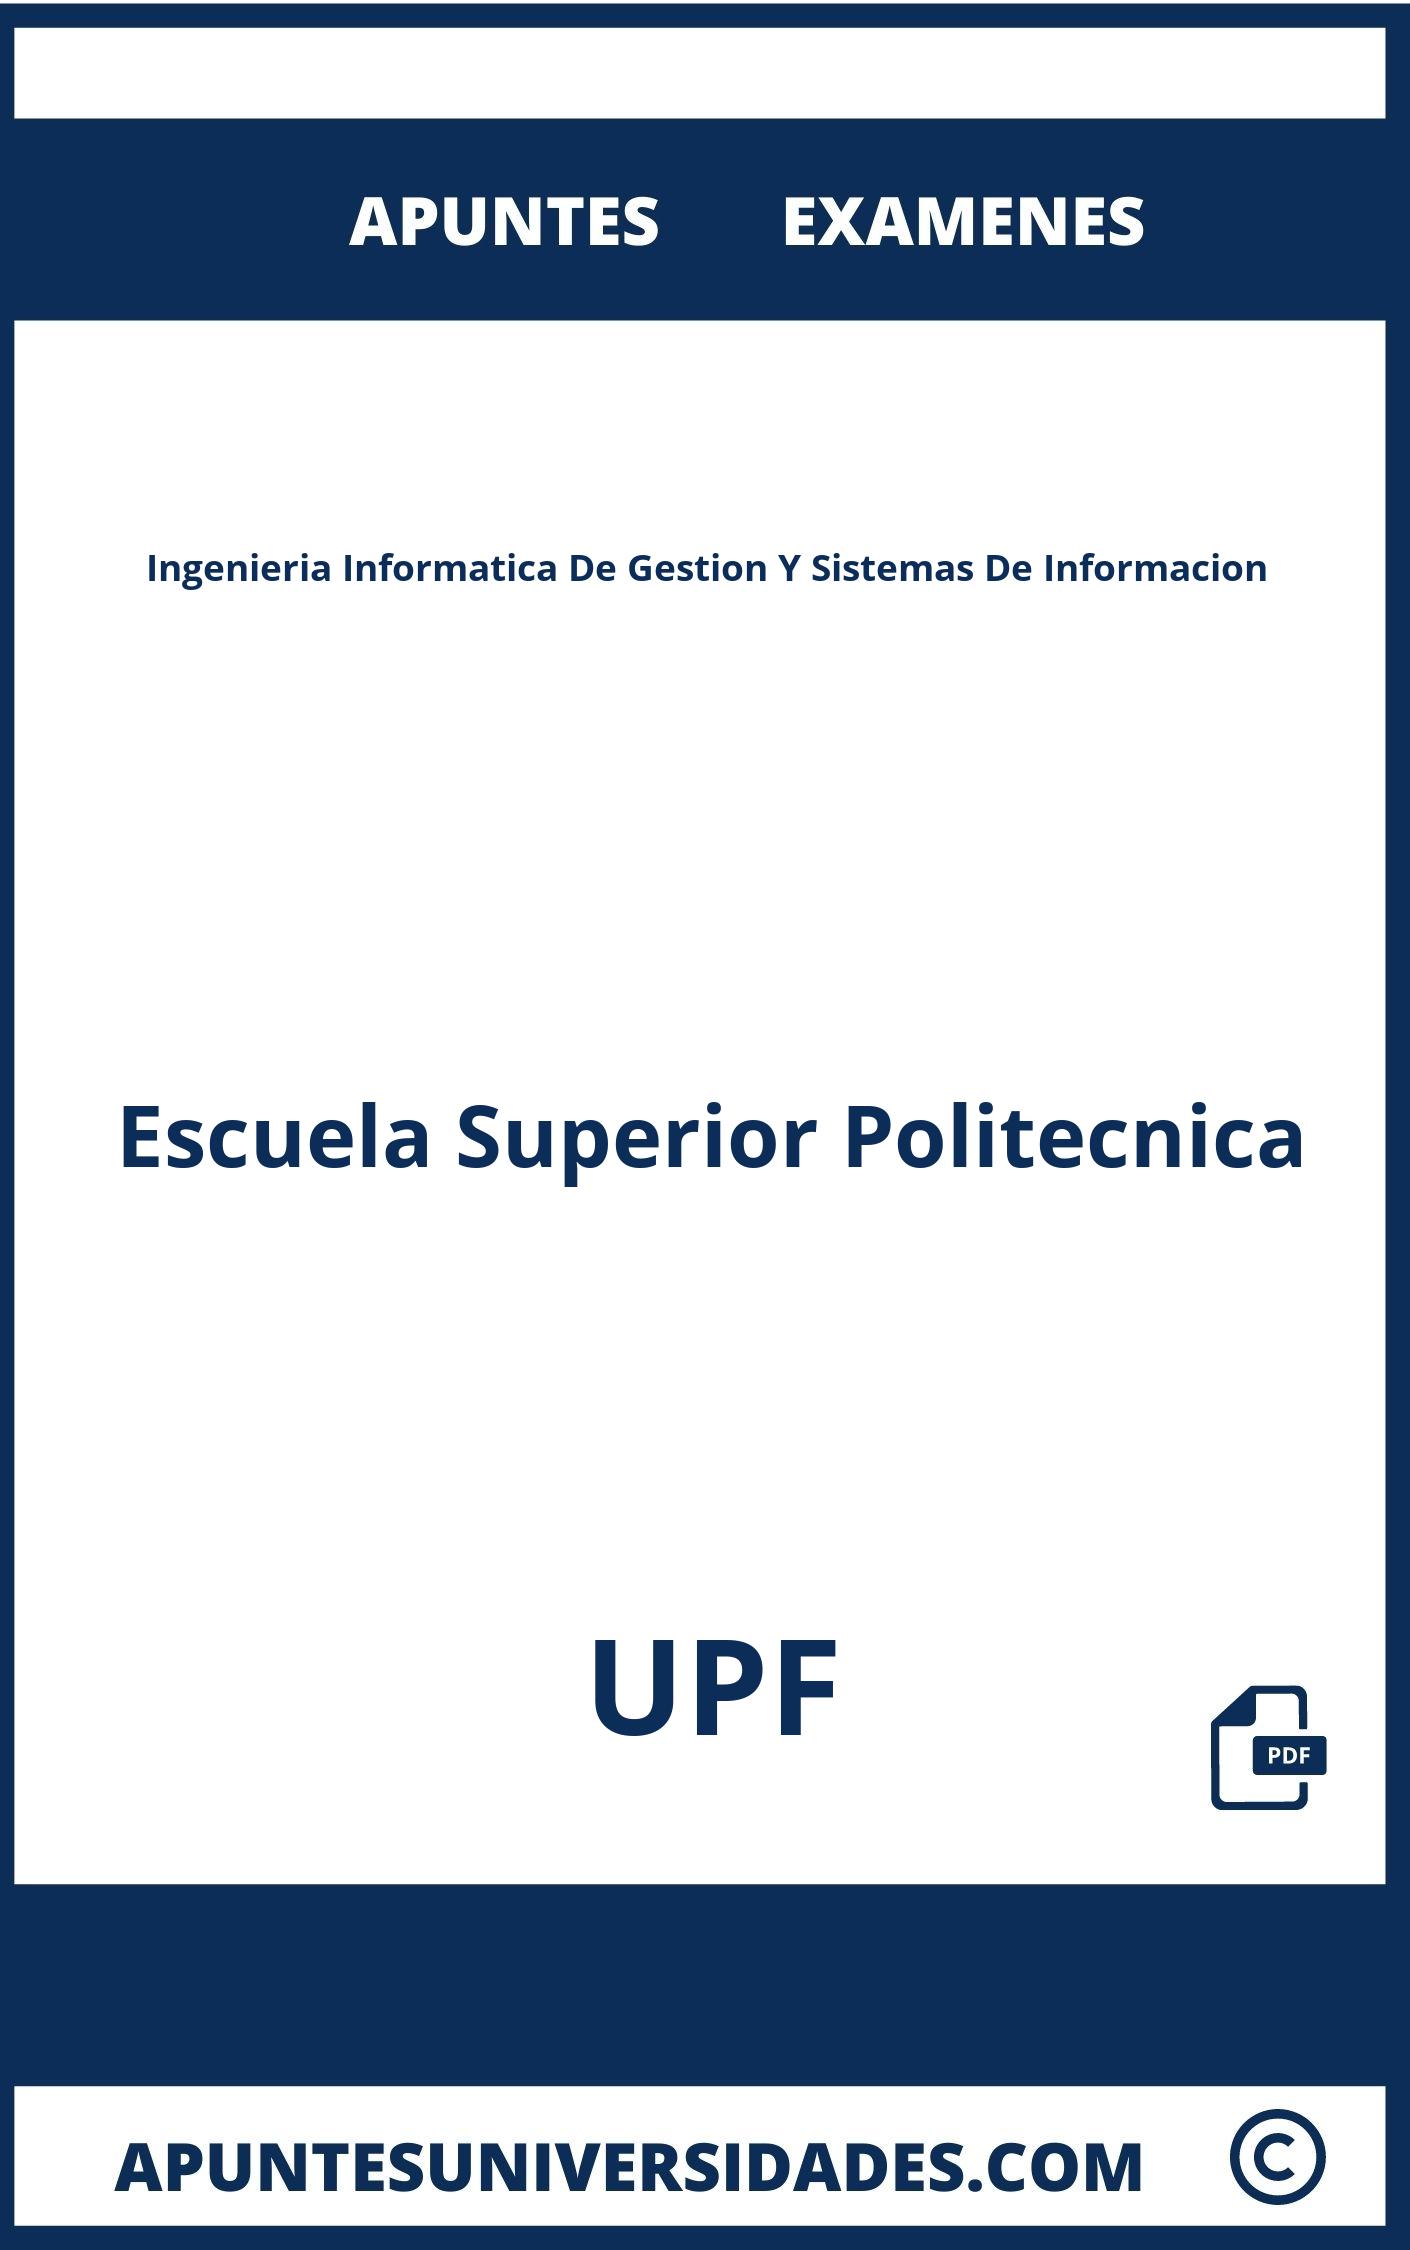 Examenes y Apuntes de Ingenieria Informatica De Gestion Y Sistemas De Informacion UPF